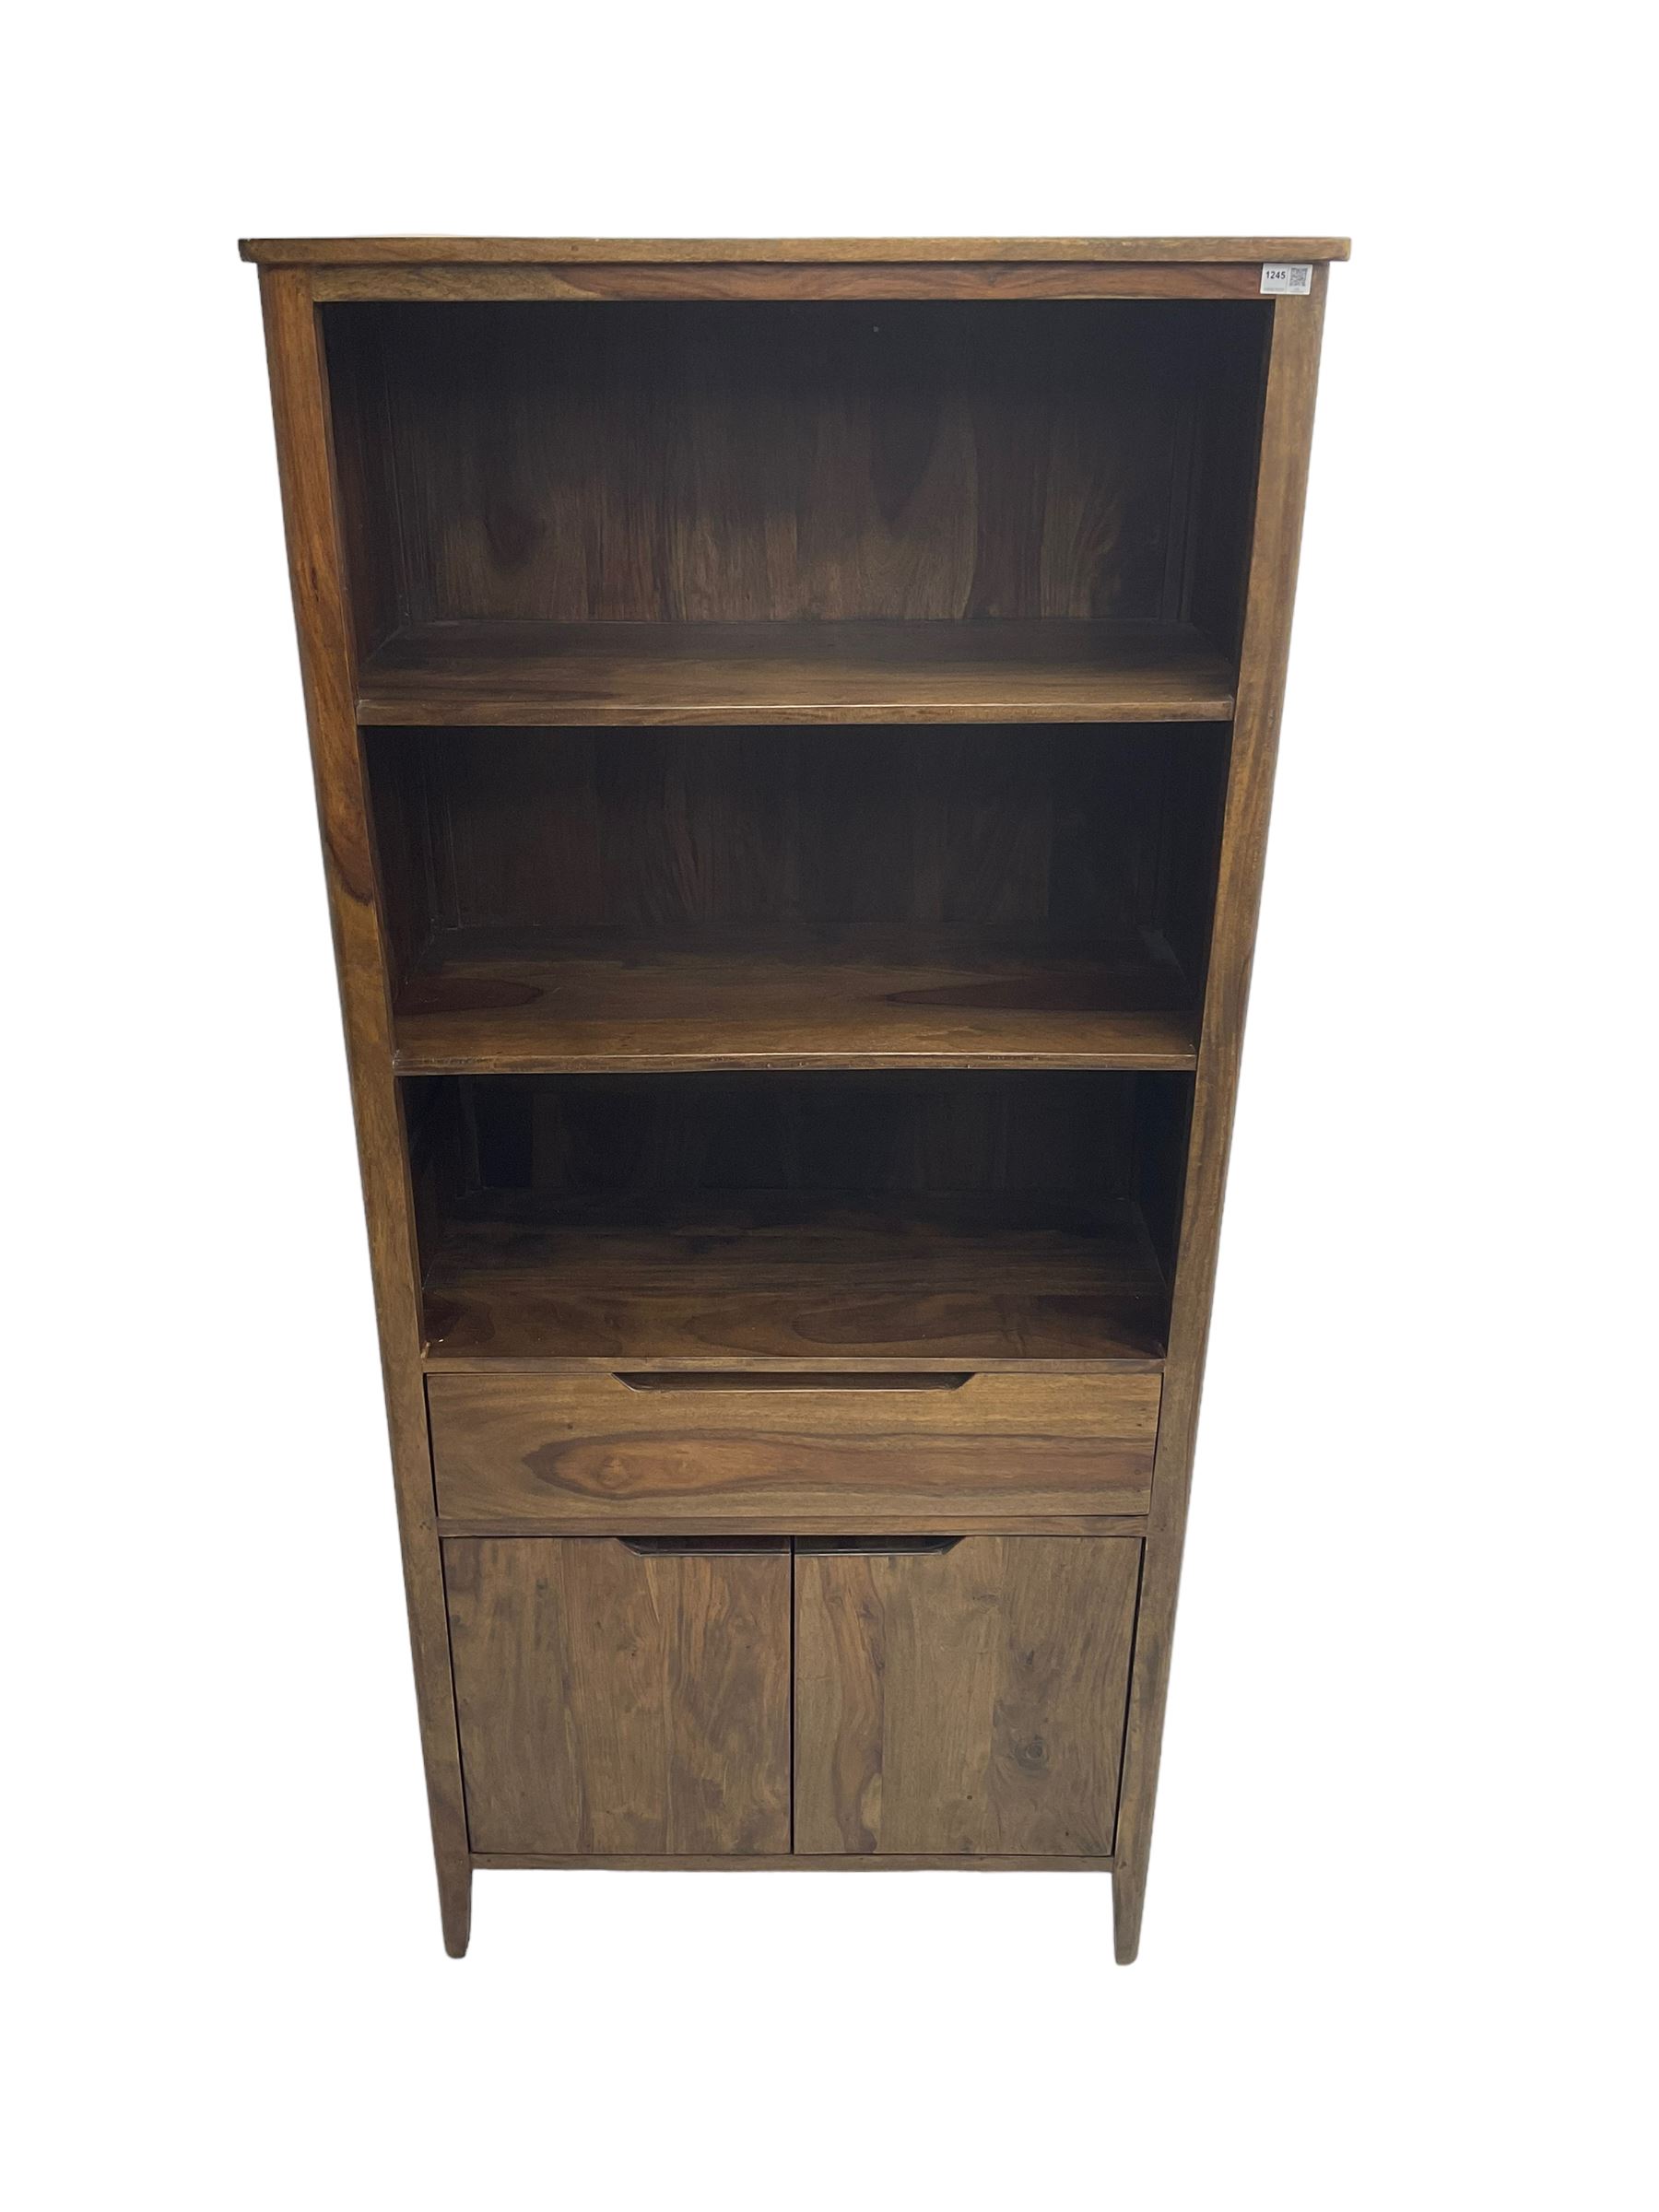 Hardwood bookcase - Image 6 of 6